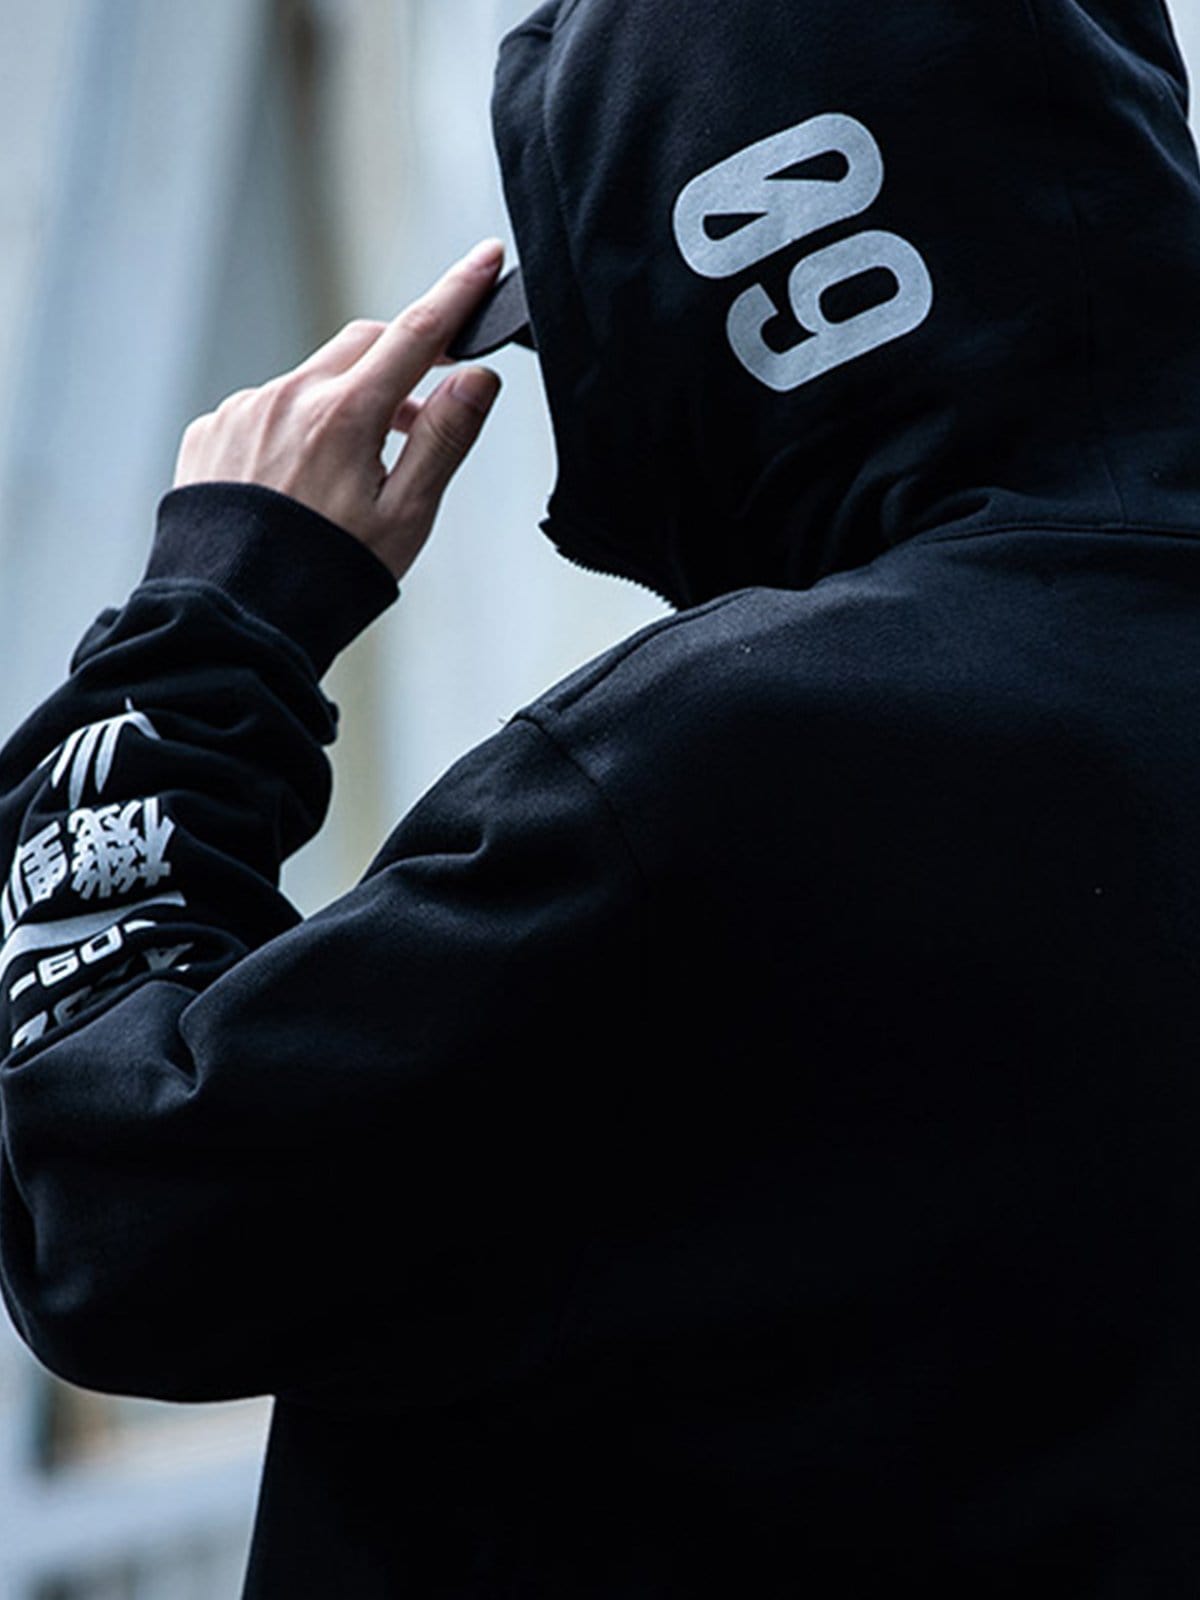 Asymmetrical Print Tilted Zipper Hoodie Streetwear Brand Techwear Combat Tactical YUGEN THEORY